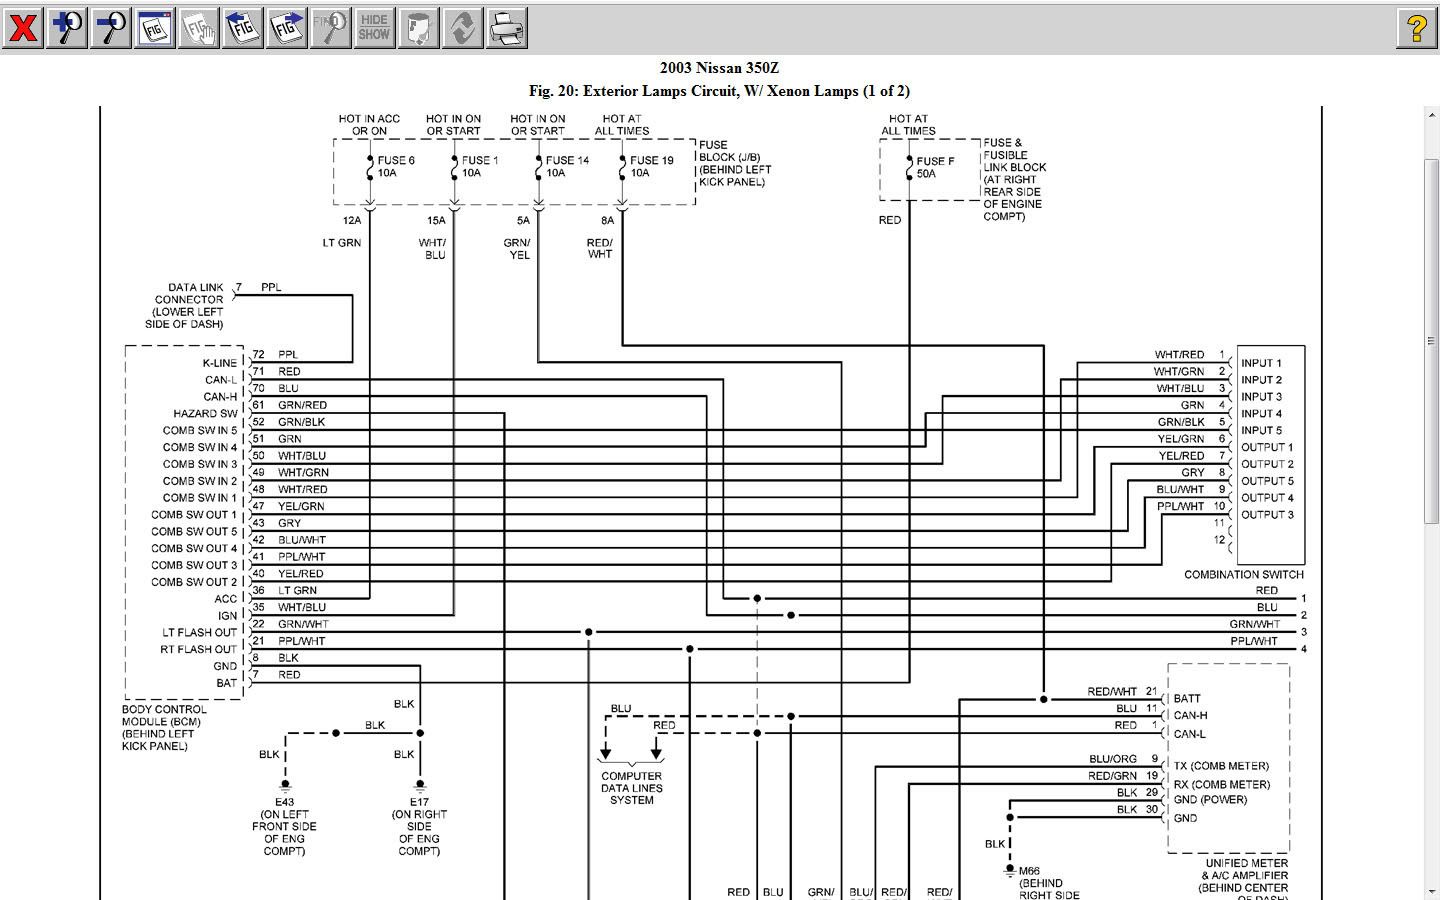 sw52 switch wiring diagram